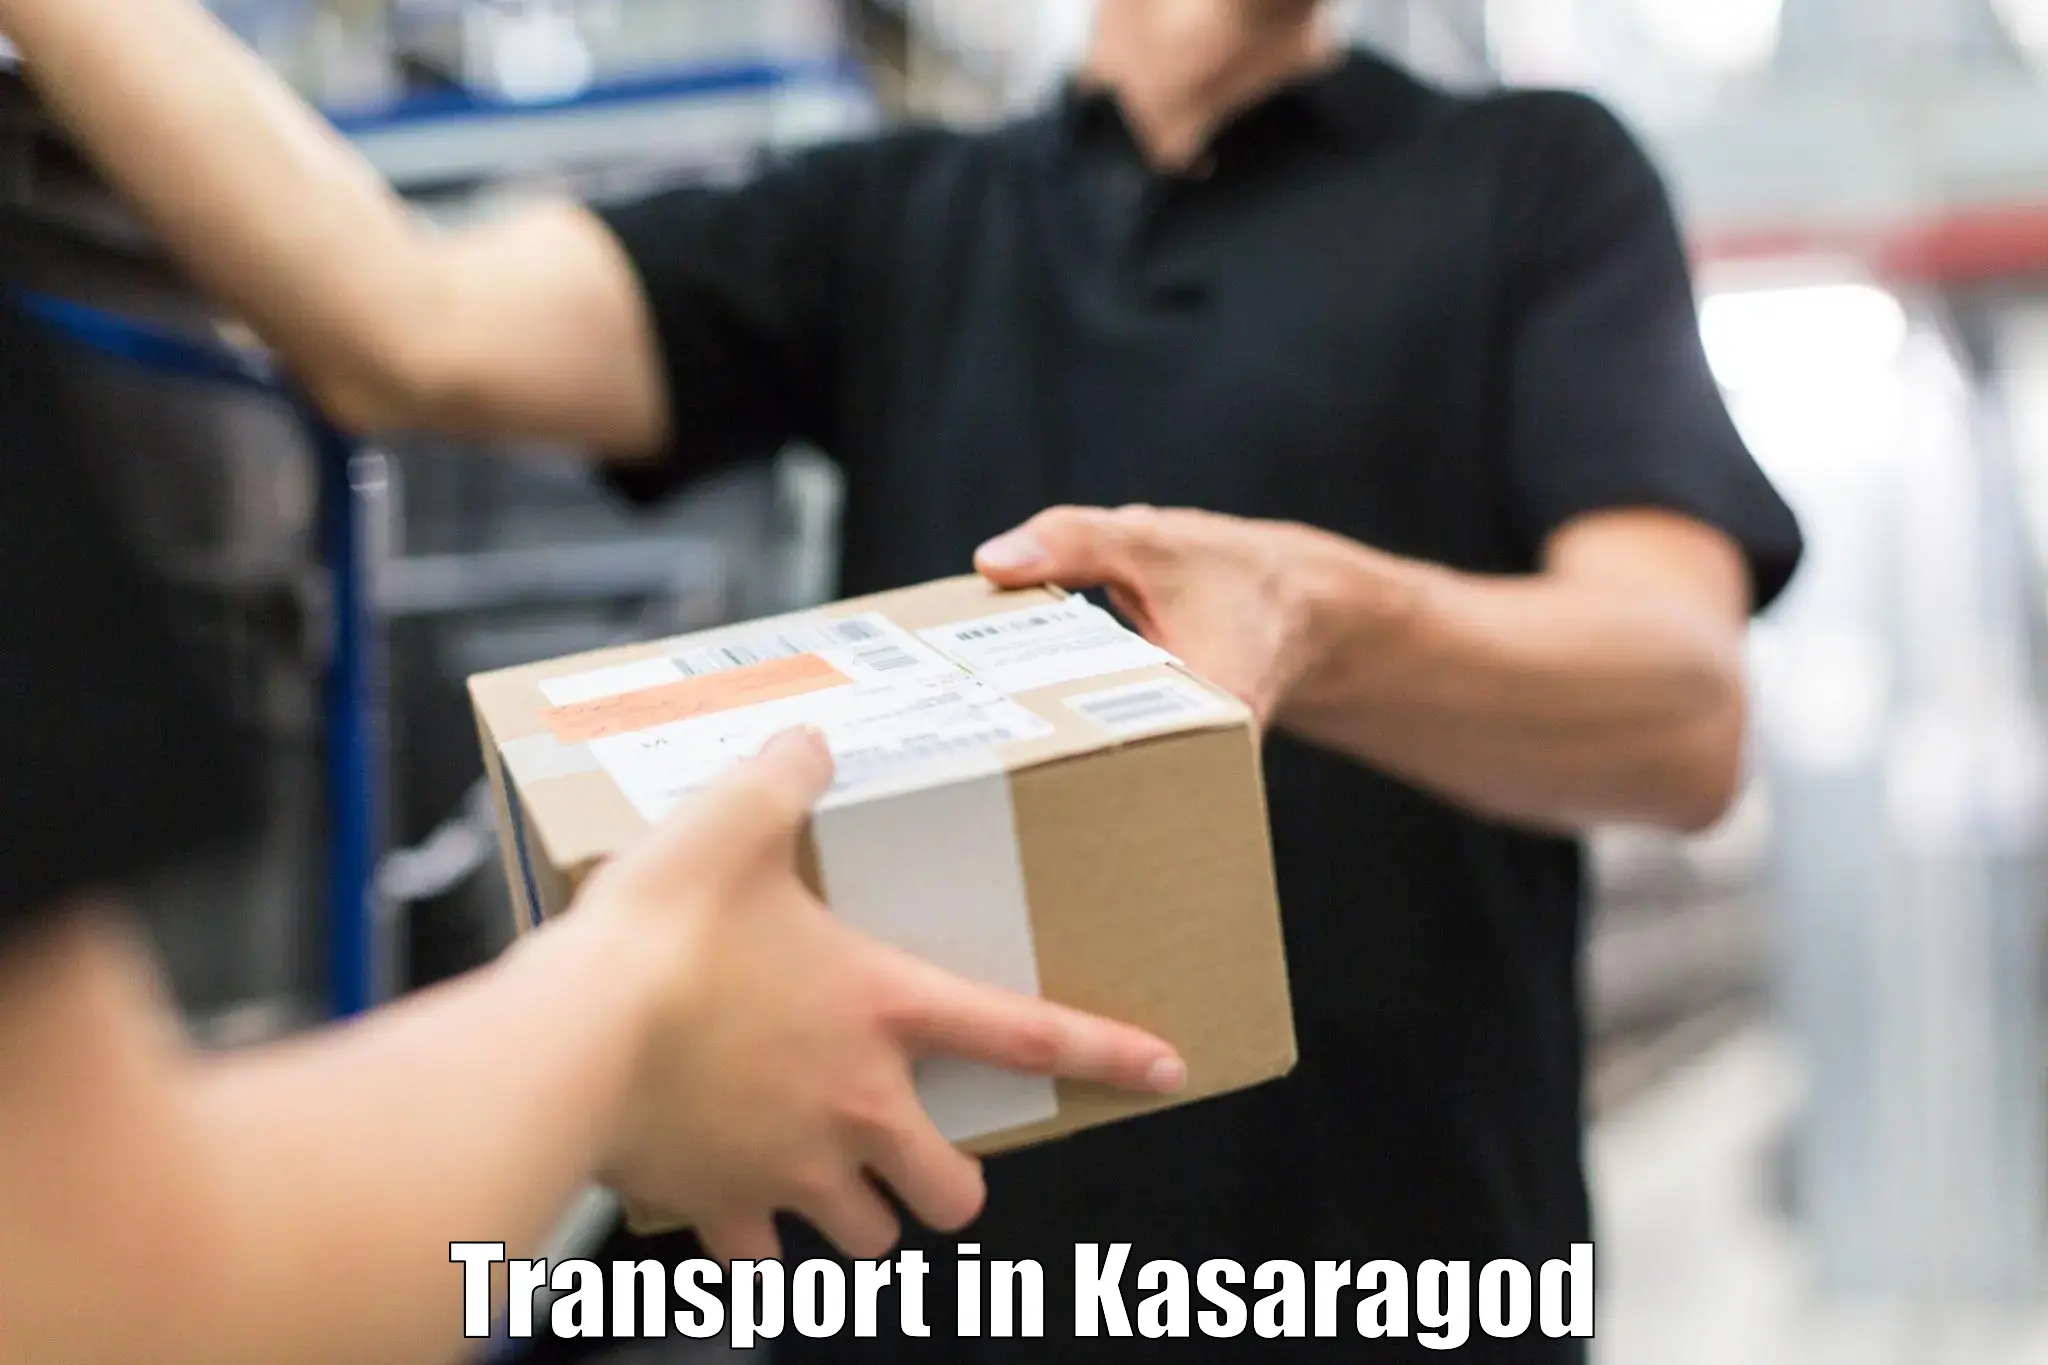 Parcel transport services in Kasaragod